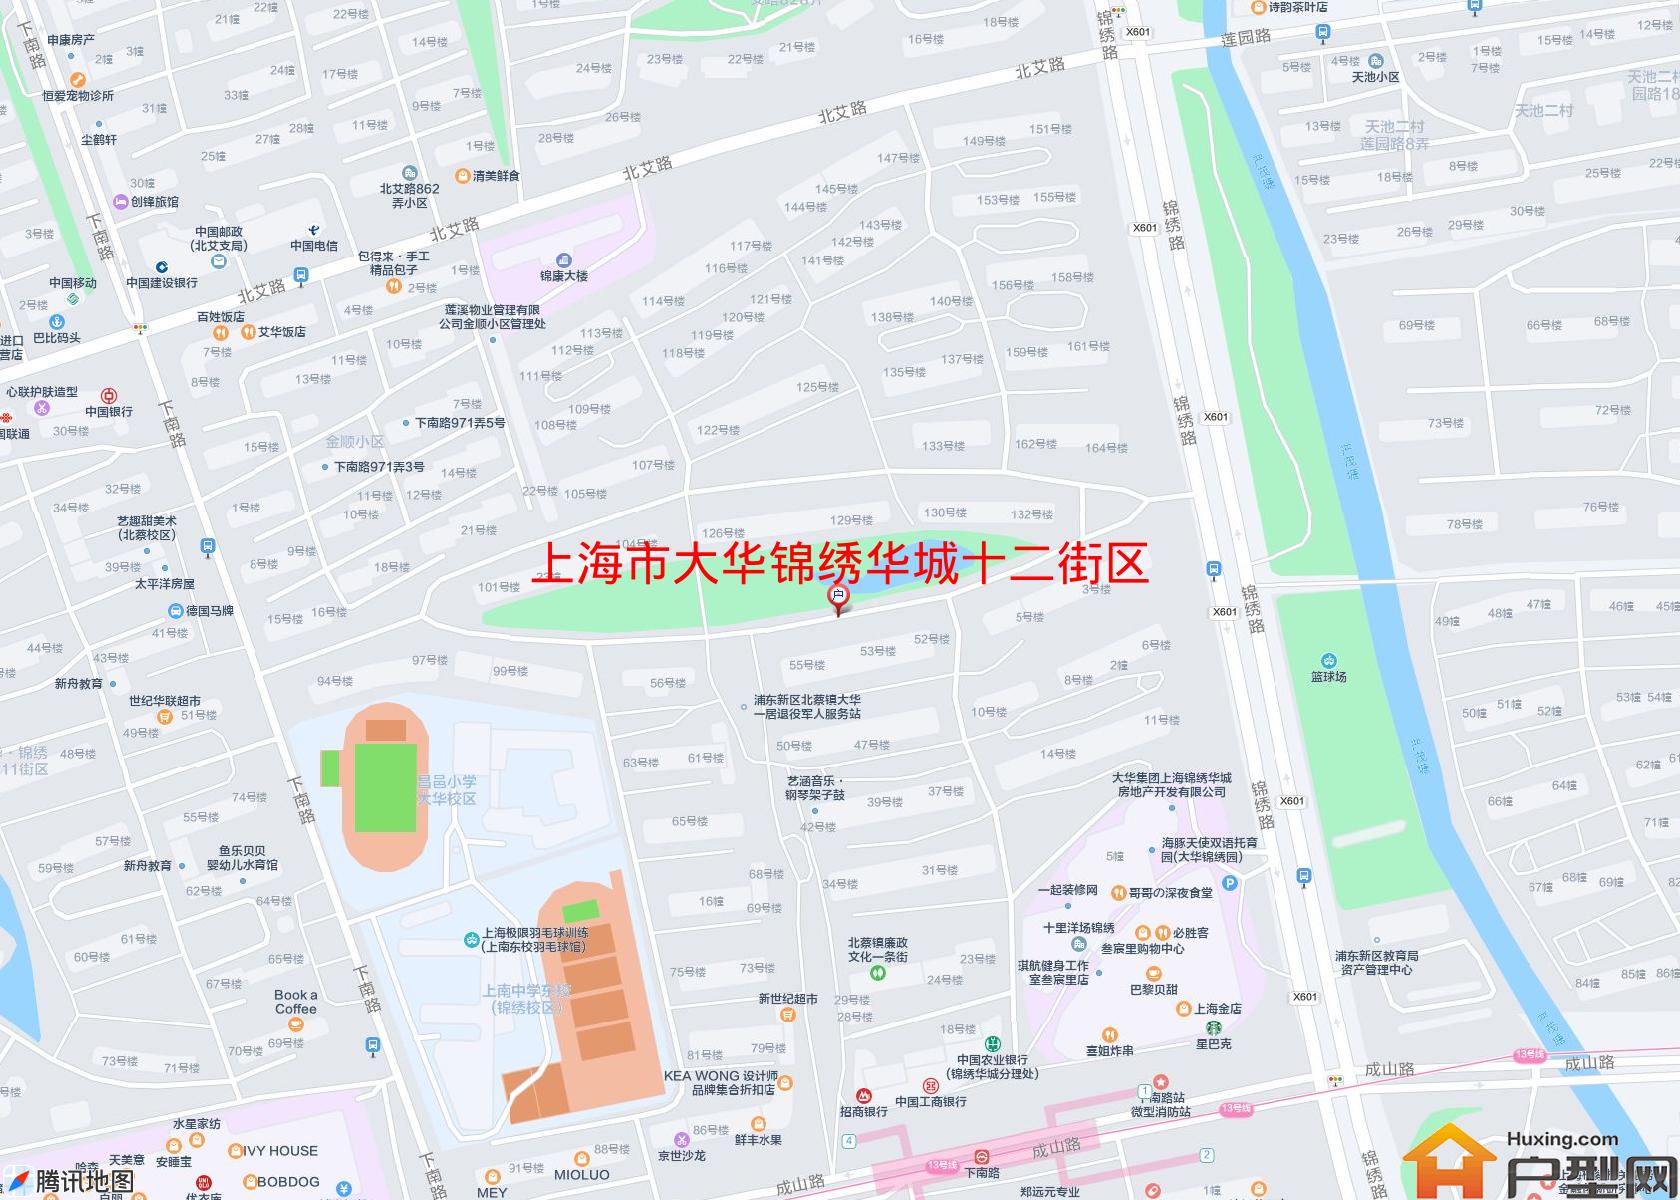 大华锦绣华城十二街区小区 - 户型网